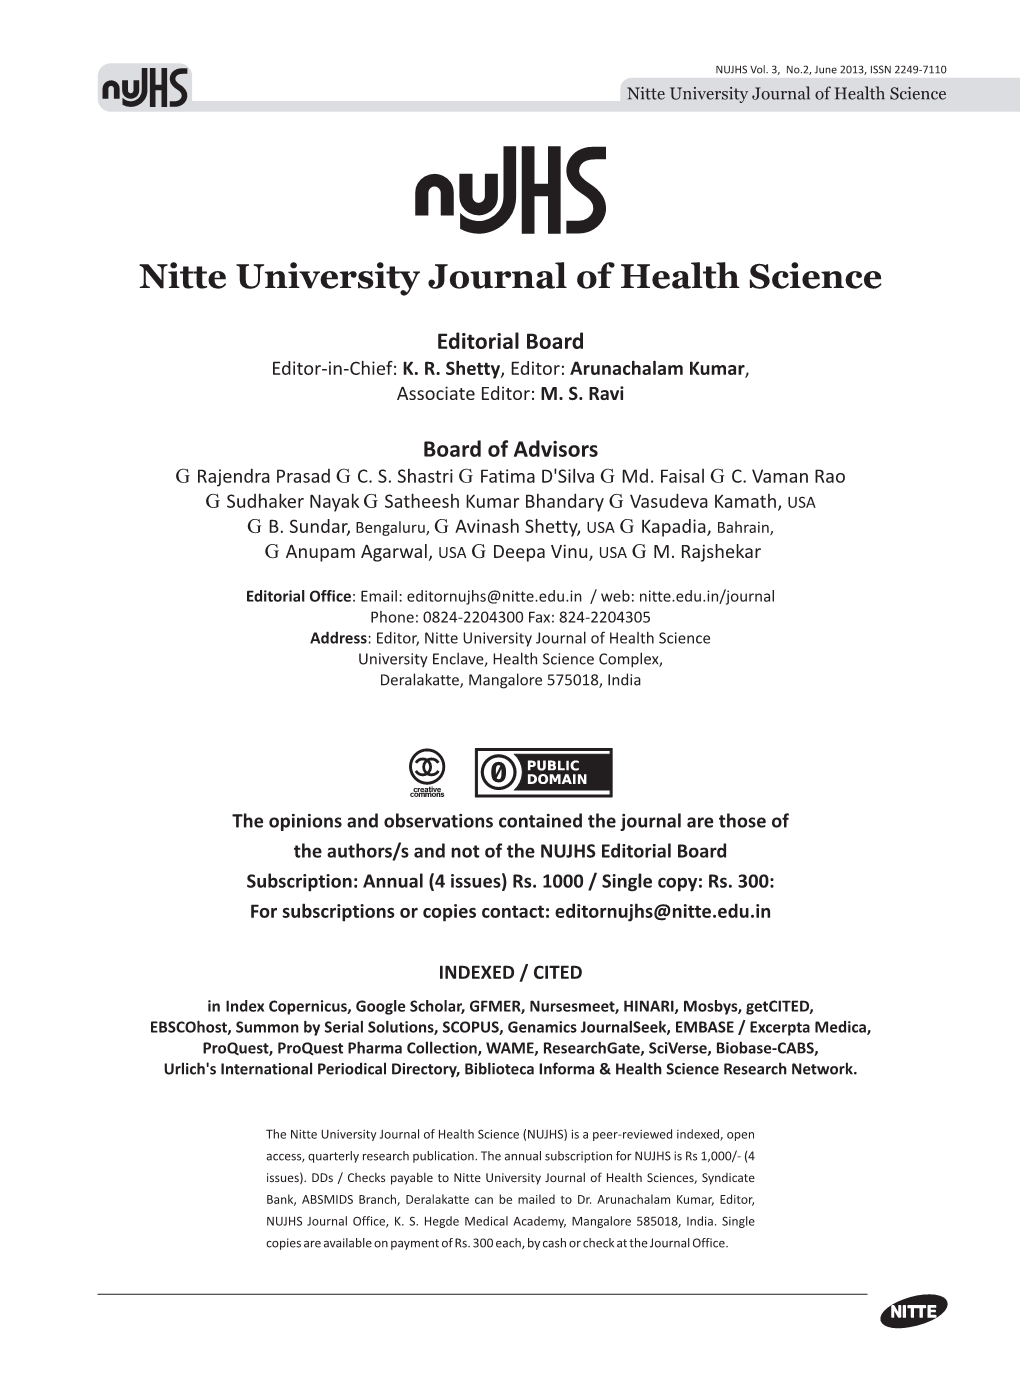 Nitte University Journal June 2013.Cdr